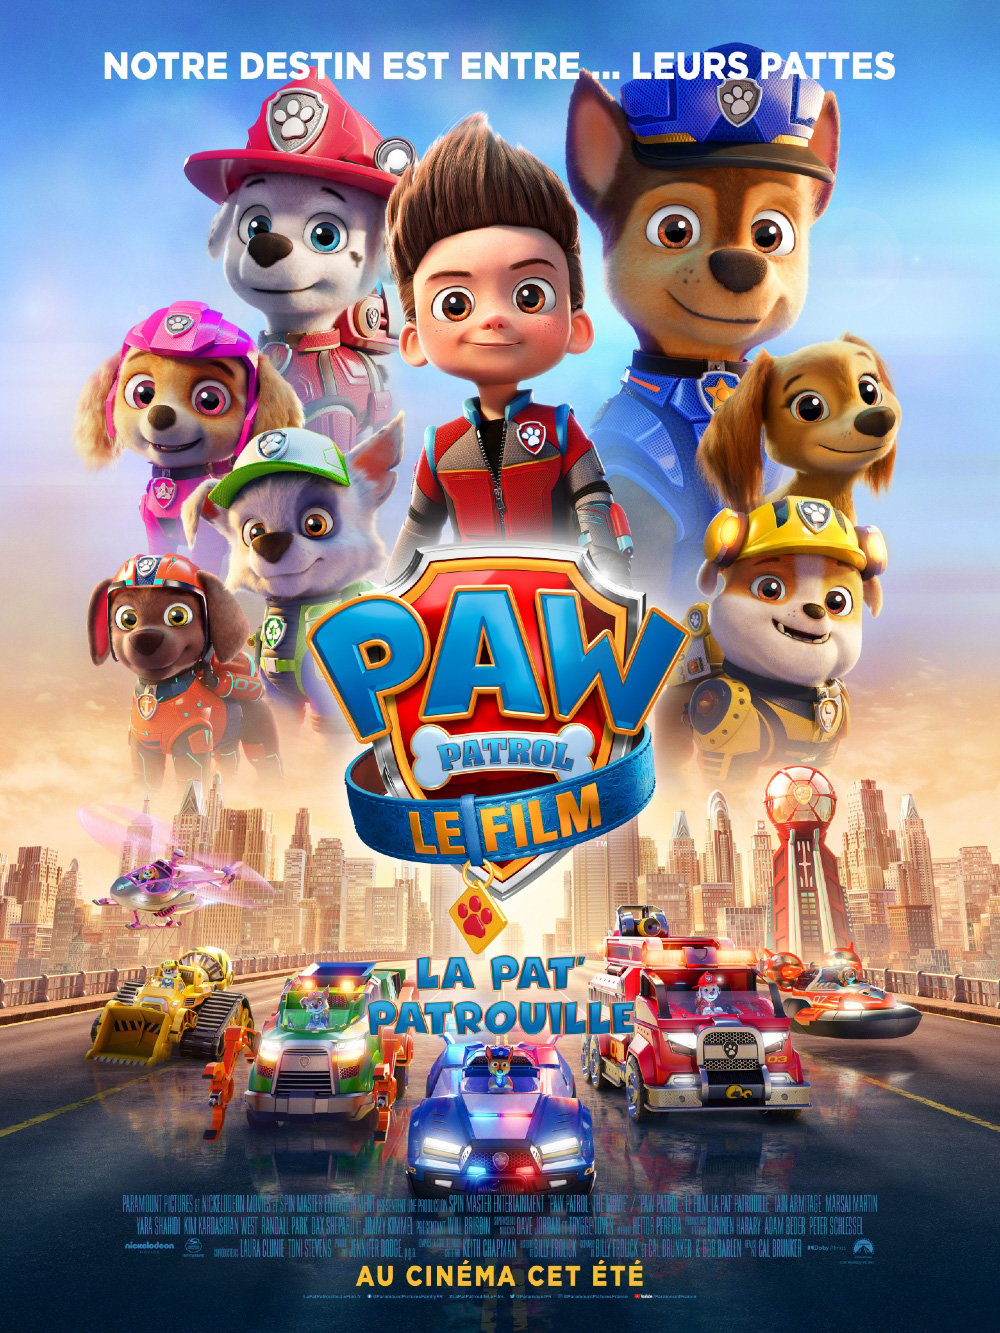 La Pat’ Patrouille - Le film streaming vf gratuit